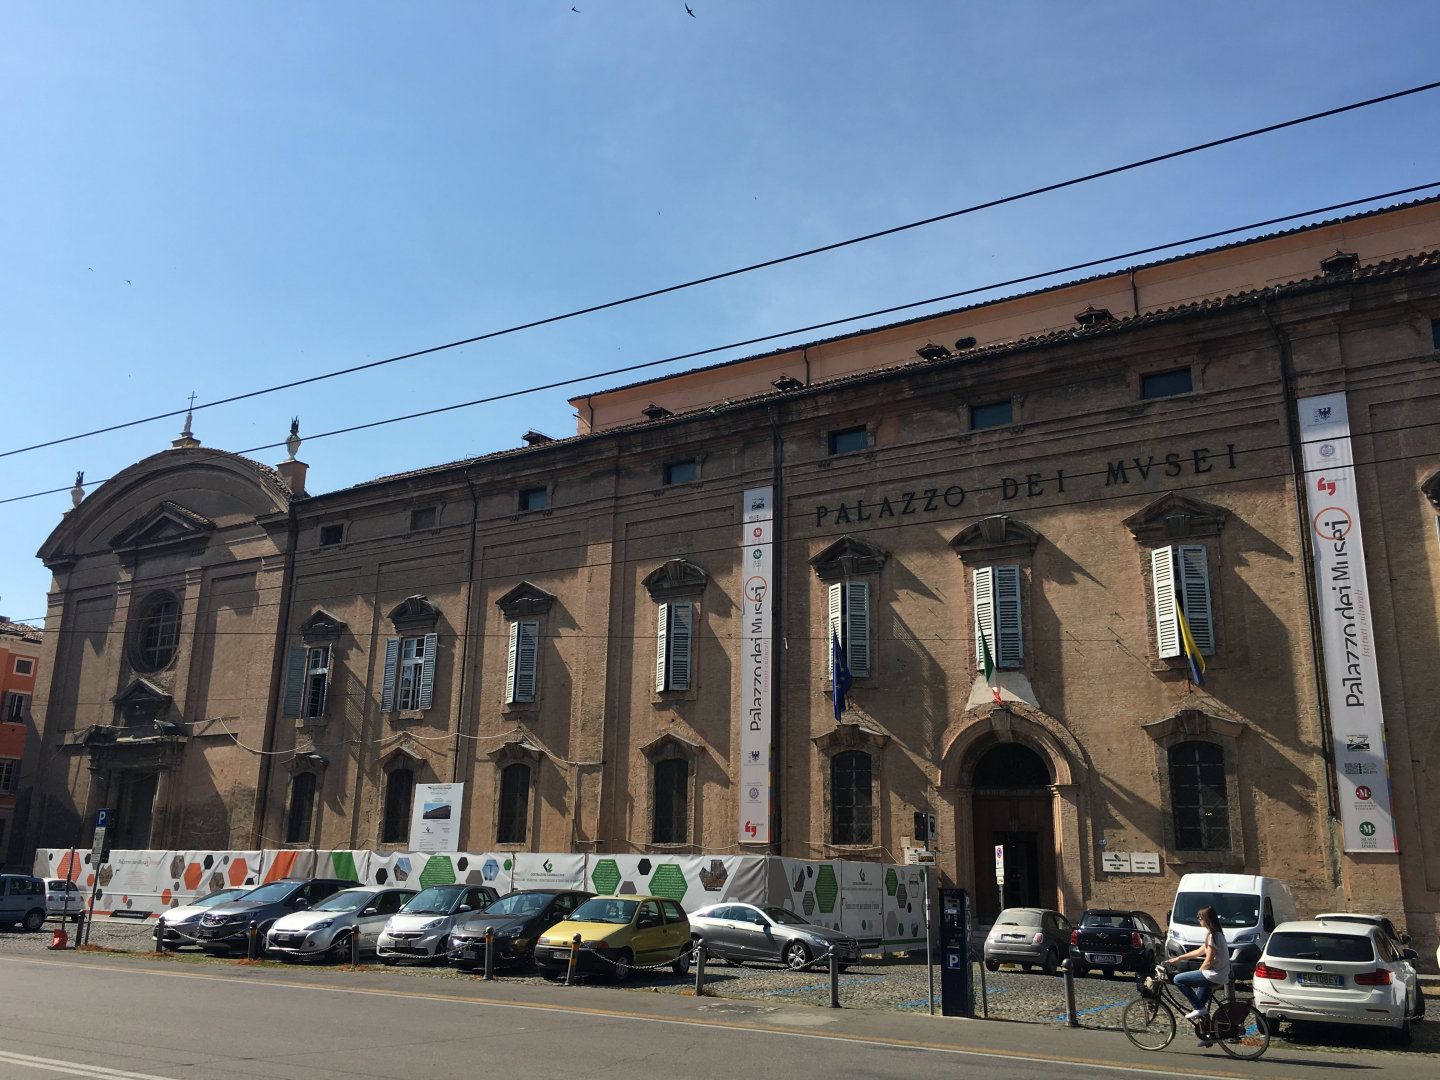 Modena - Palazzo dei Musei